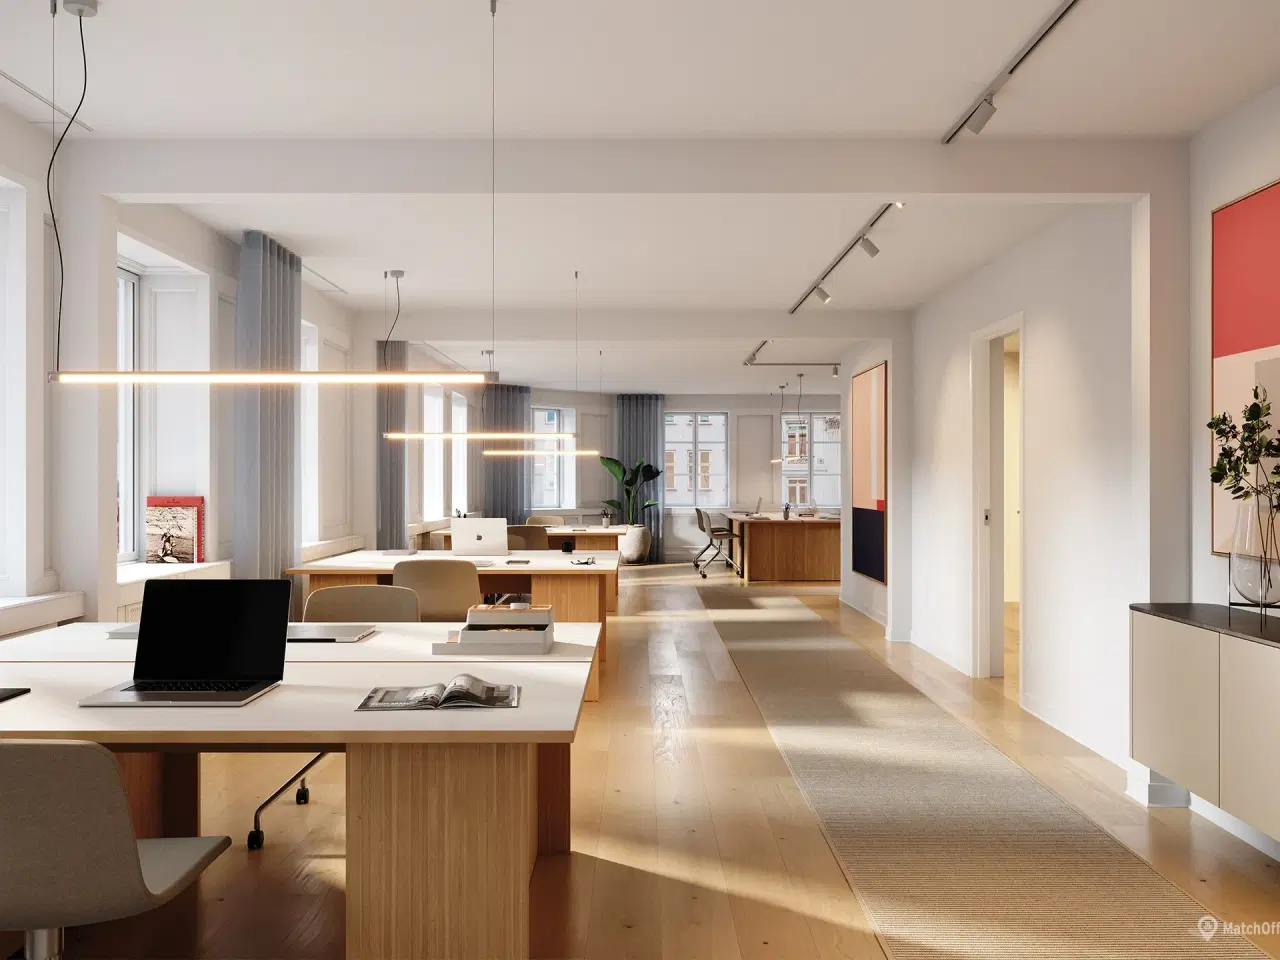 Billede 1 - 399 m2 kontor eller showroom i Københavns charmerende Latinerkvarter